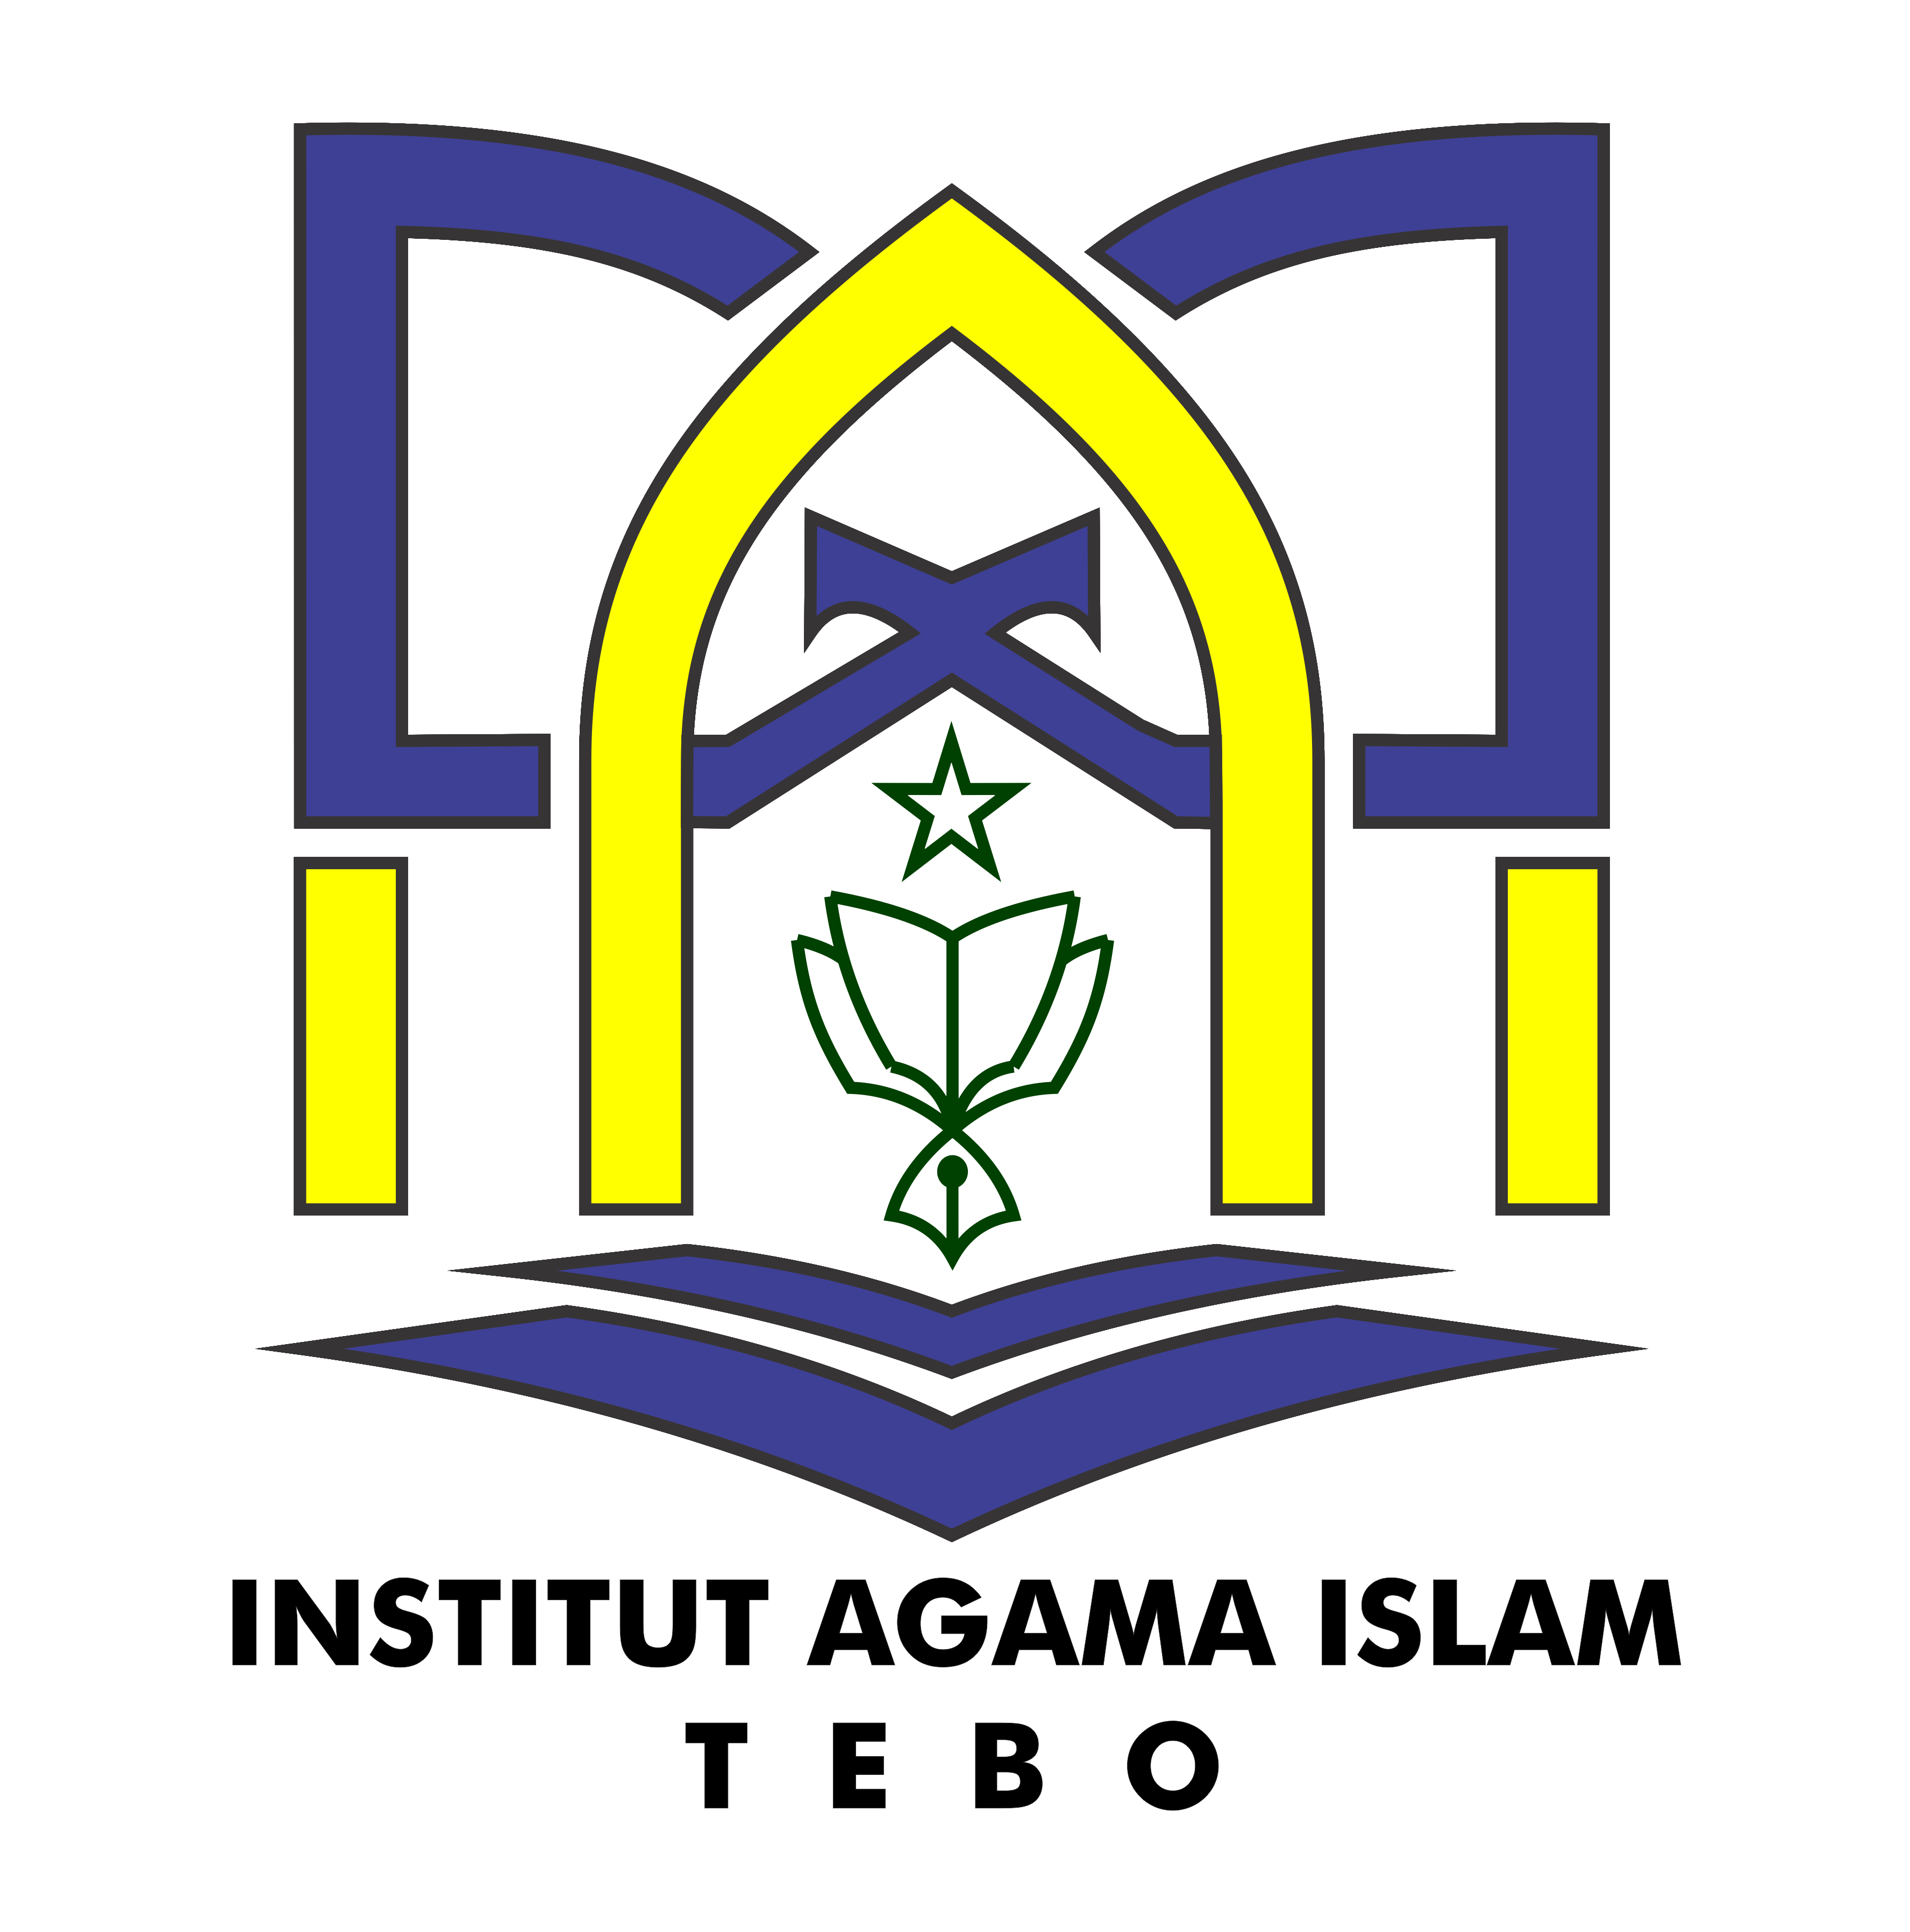 Institut Agama Islam Tebo